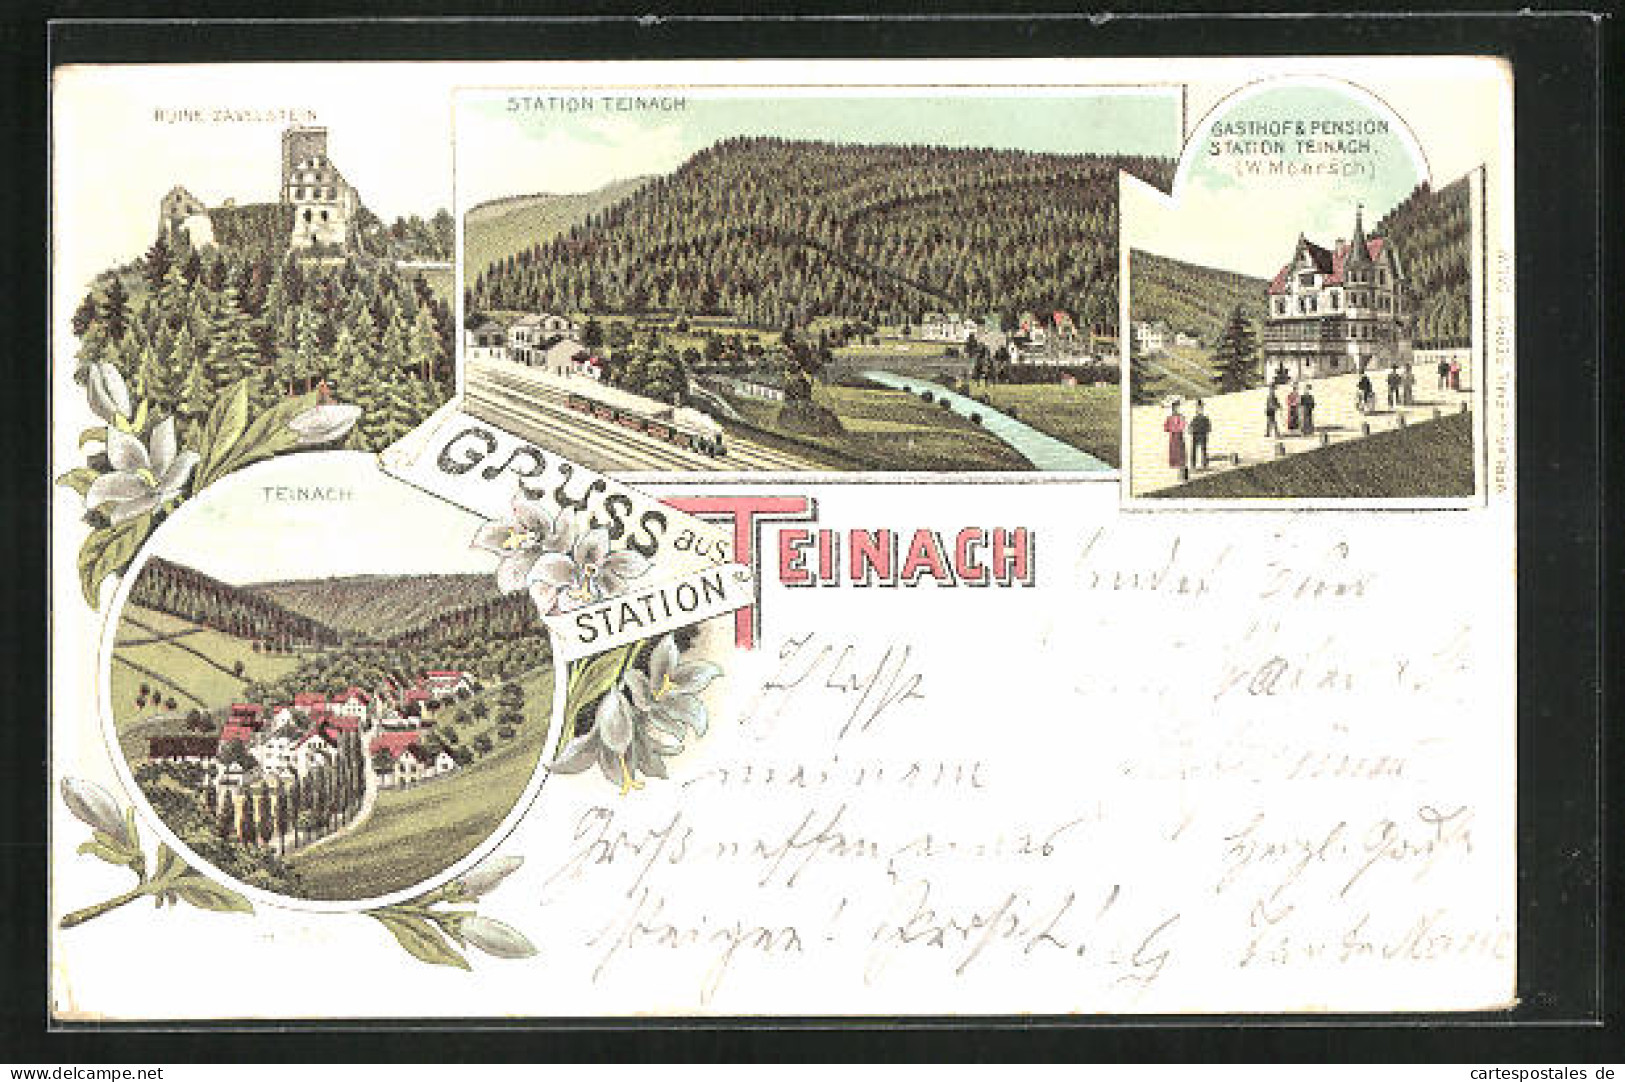 Lithographie Teinach, Gasthof Und Pension Station Teinach, Bahnhof, Ruine Zavelstein  - Bad Teinach